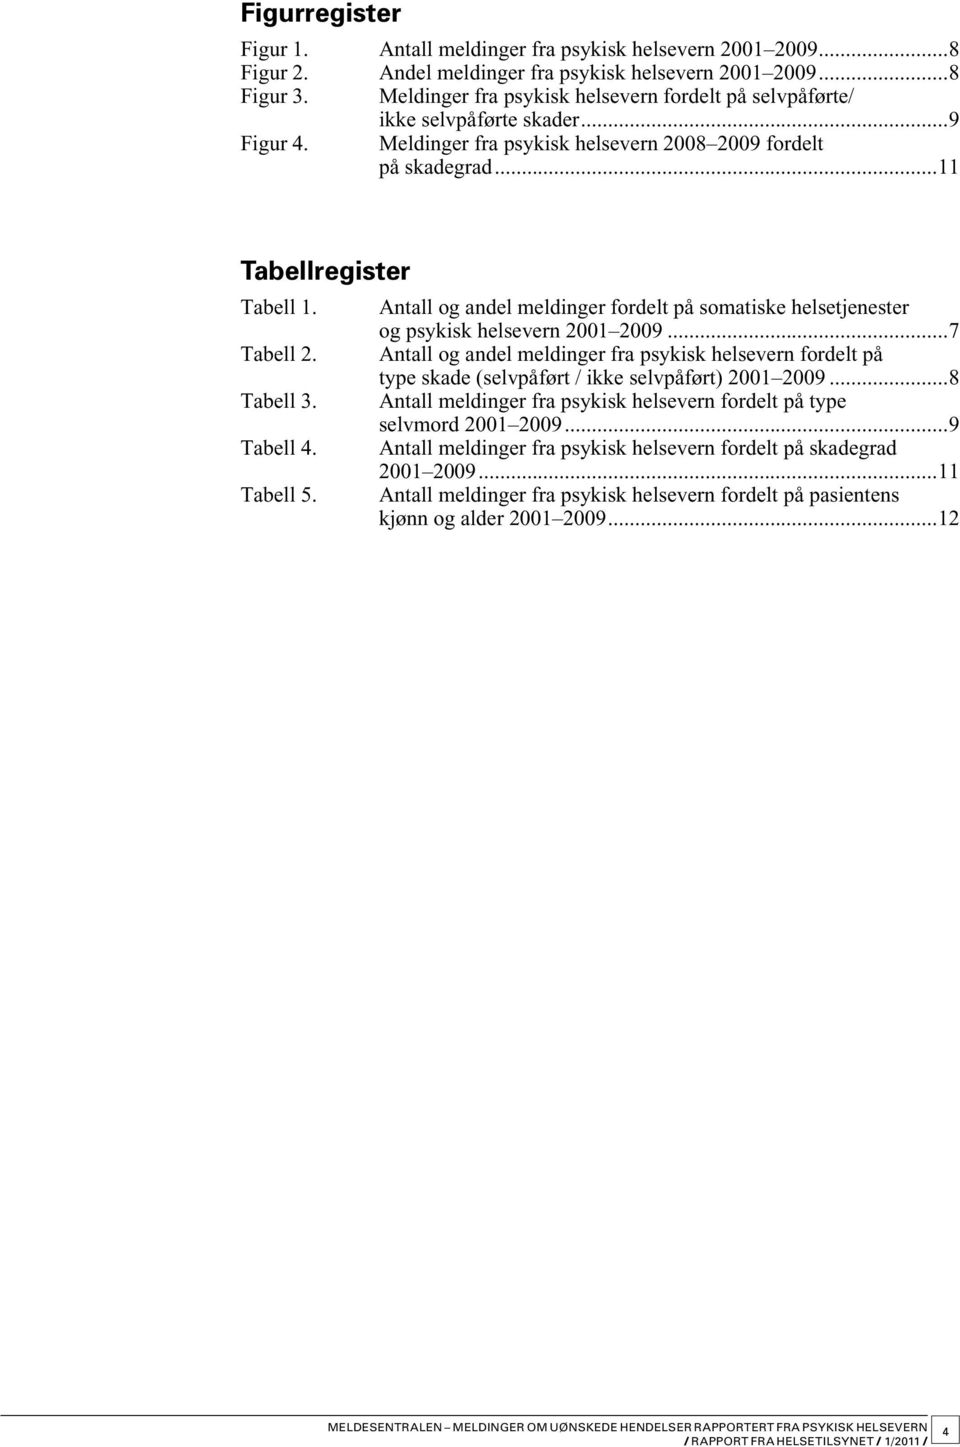 Tabell 2. Tabell 3. Tabell 4. Tabell 5. Antall og andel fordelt på somatiske helsetjenester og psykisk helsevern 2001 2009.